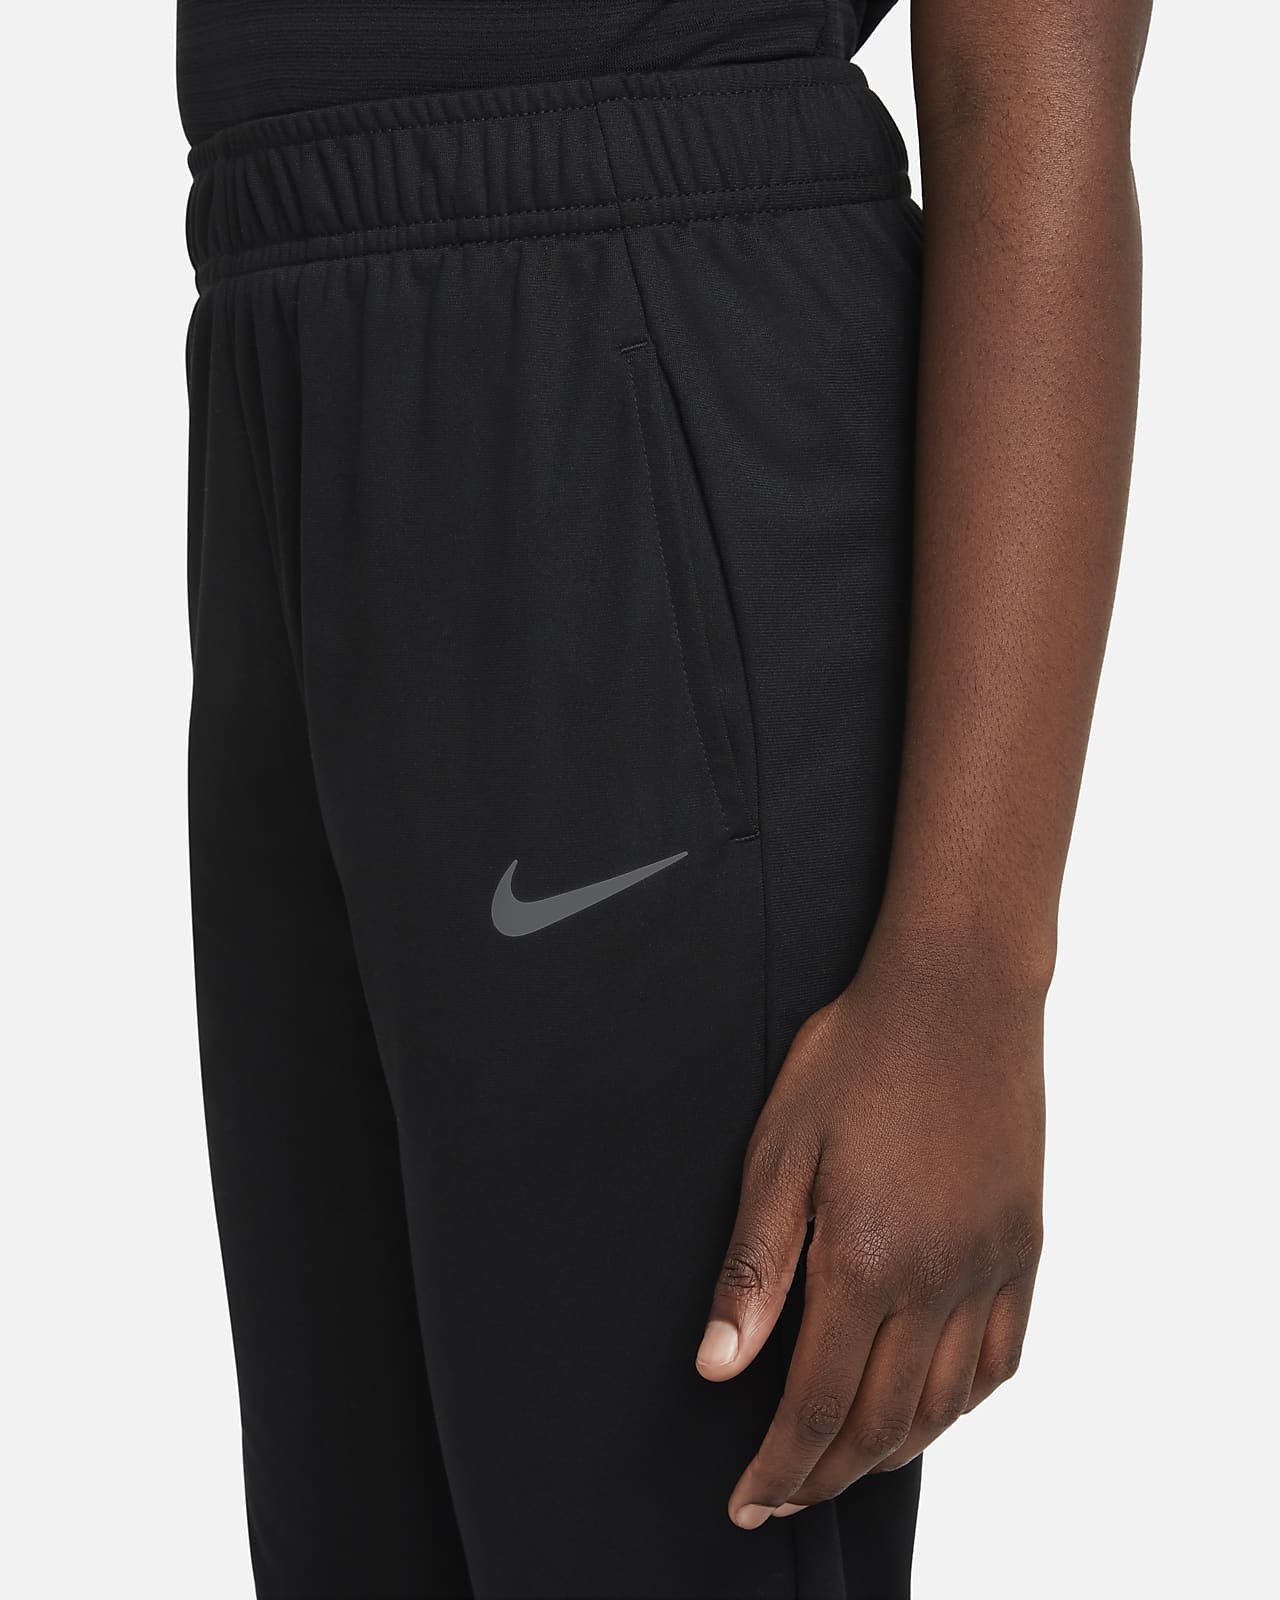 auteur punch bang Spodnie treningowe dla dużych dzieci (chłopców) Nike Poly+. Nike PL